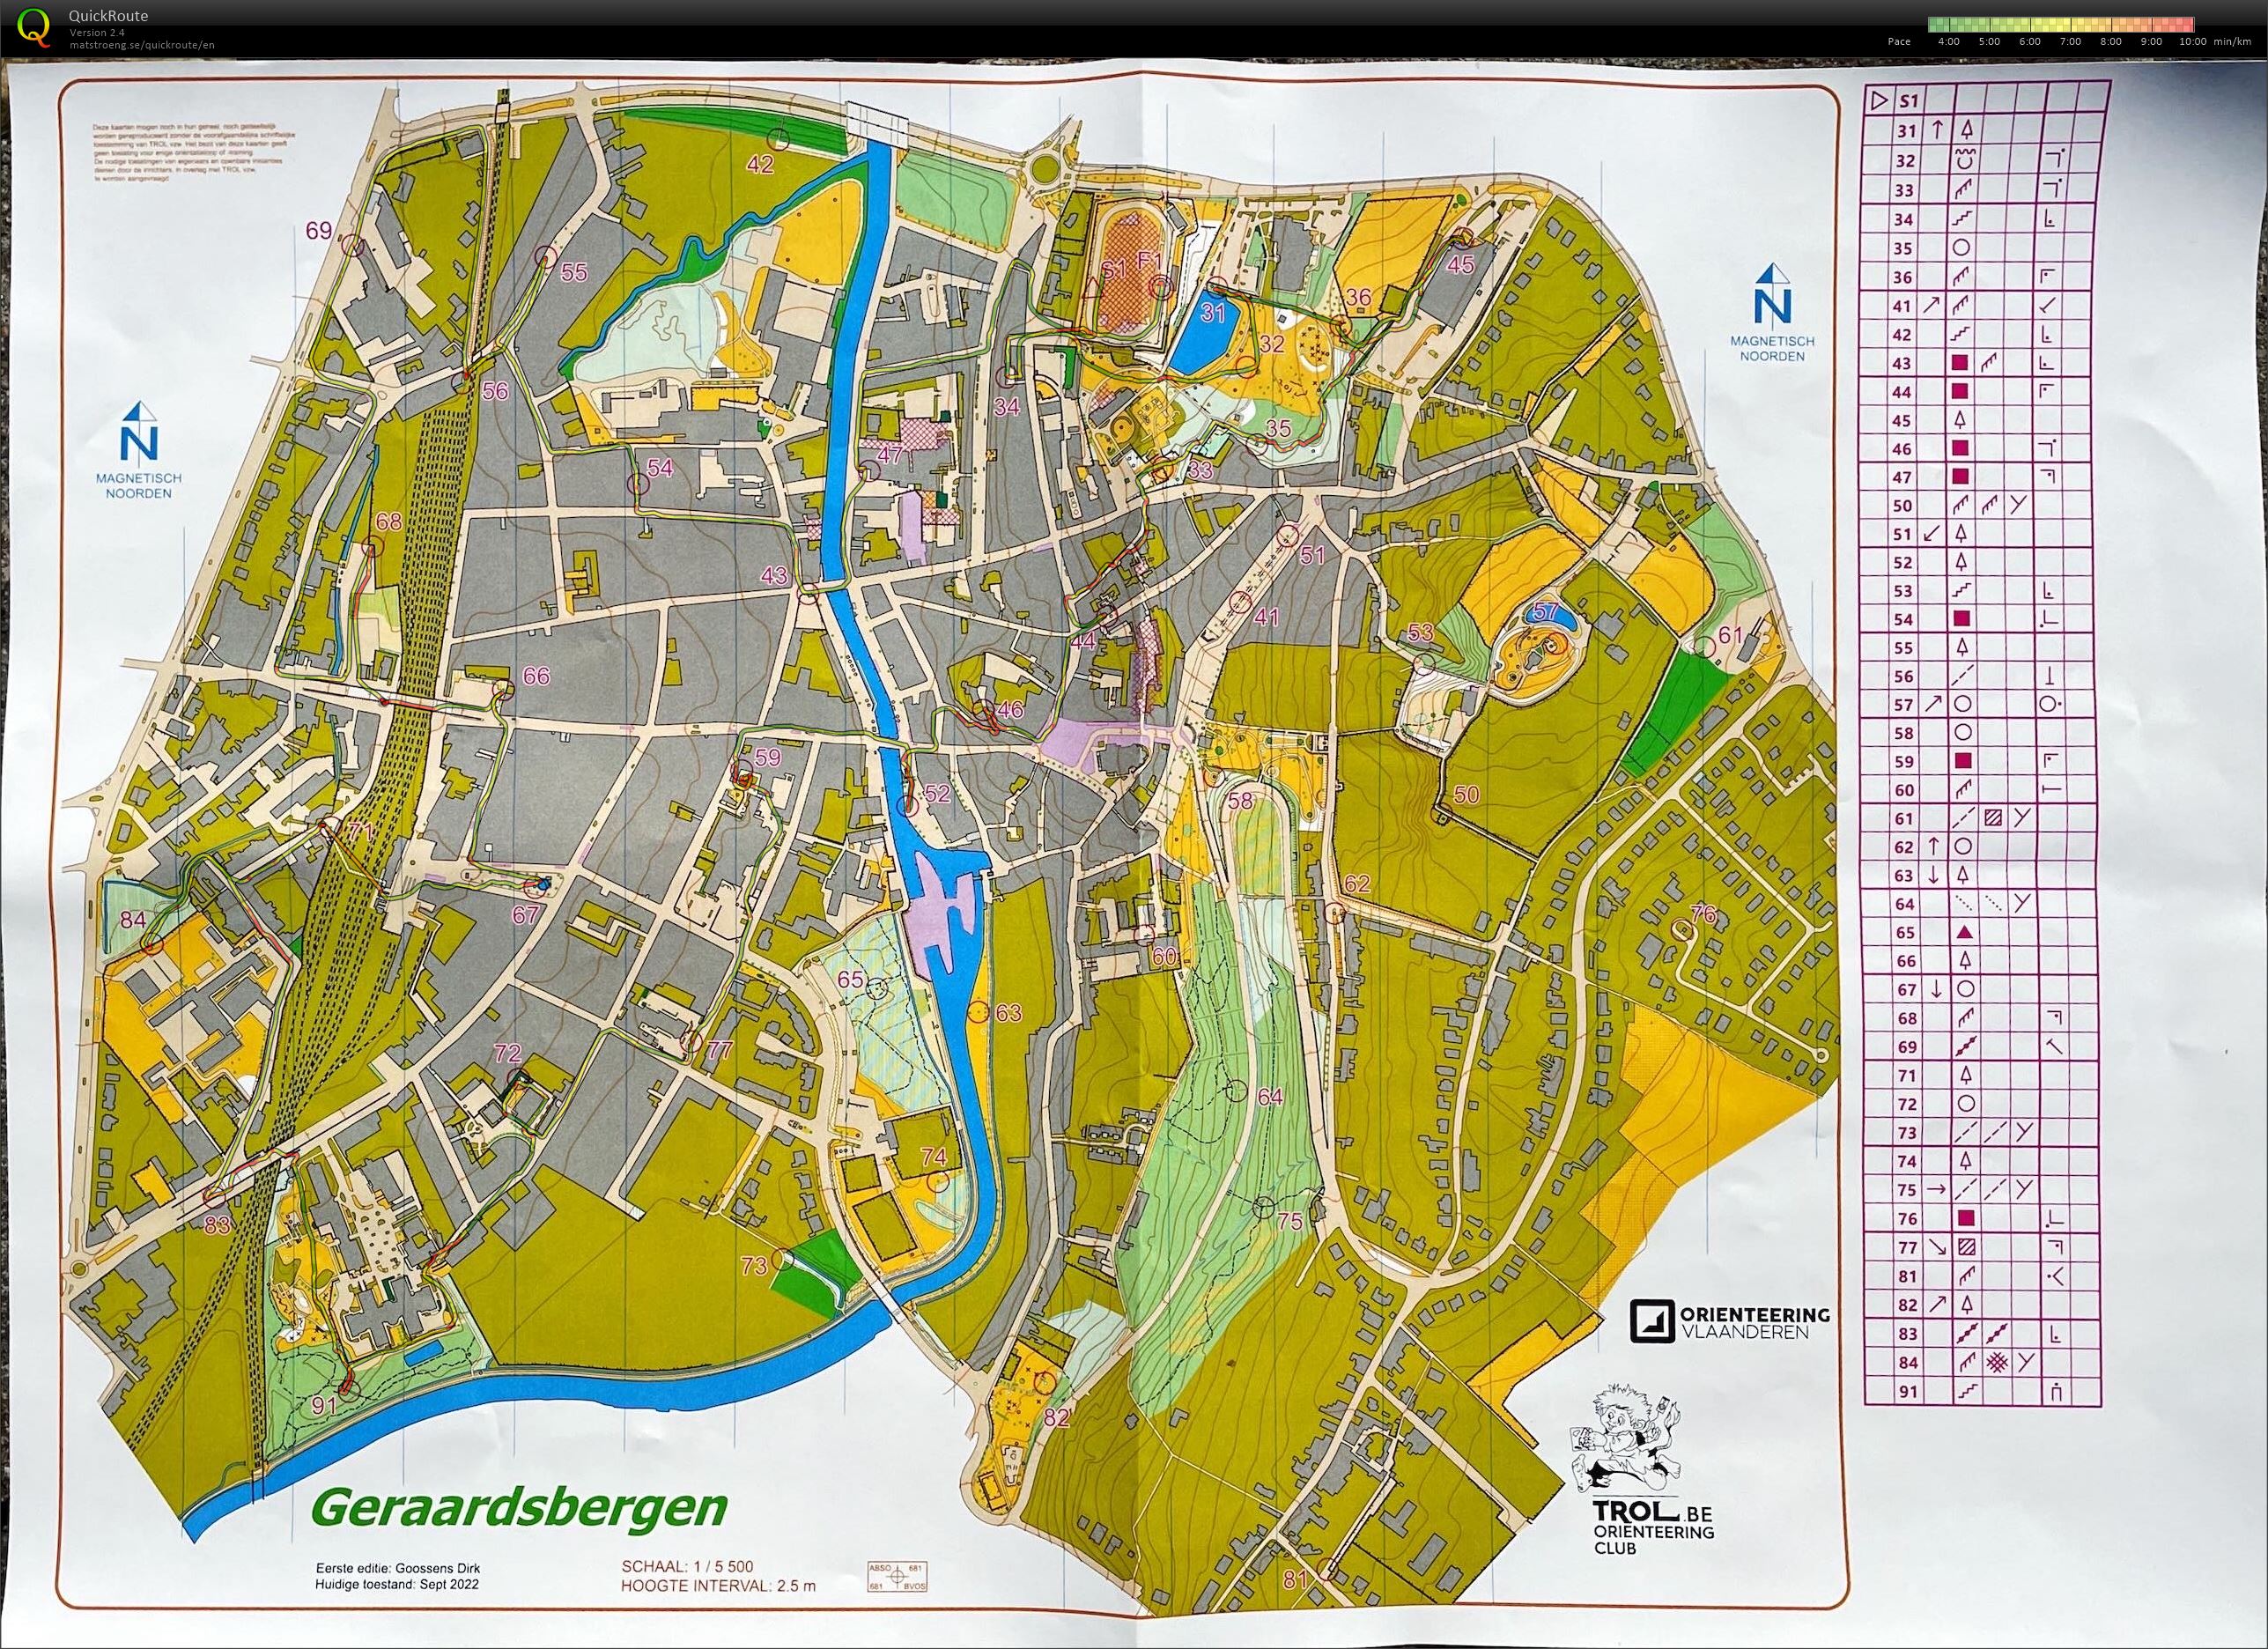 Scoreloop Geraardsbergen (25.09.2022)